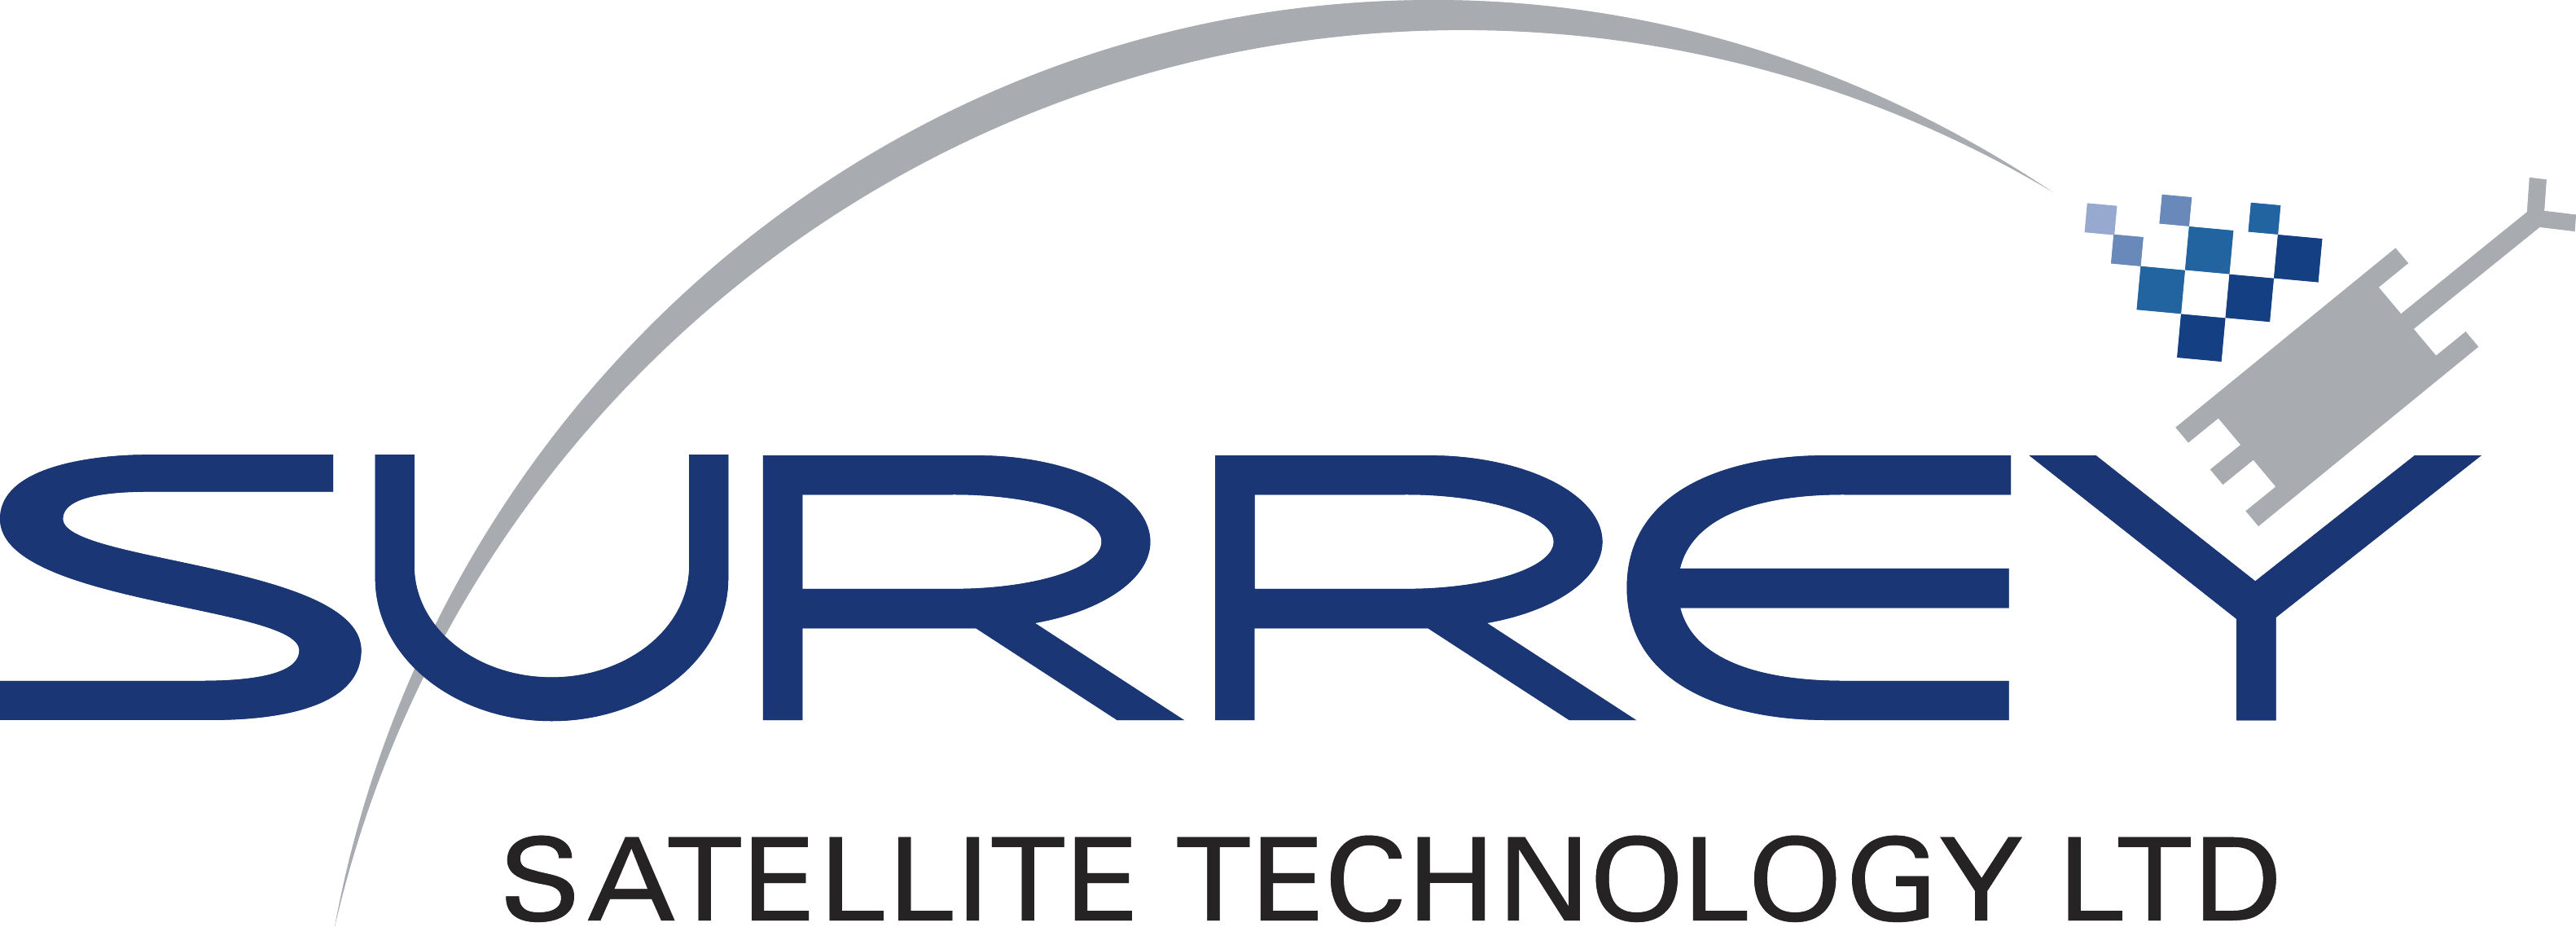 SSTL - Surrey Satellite Technology - Surrey Space Technology - Surrey Space Centre